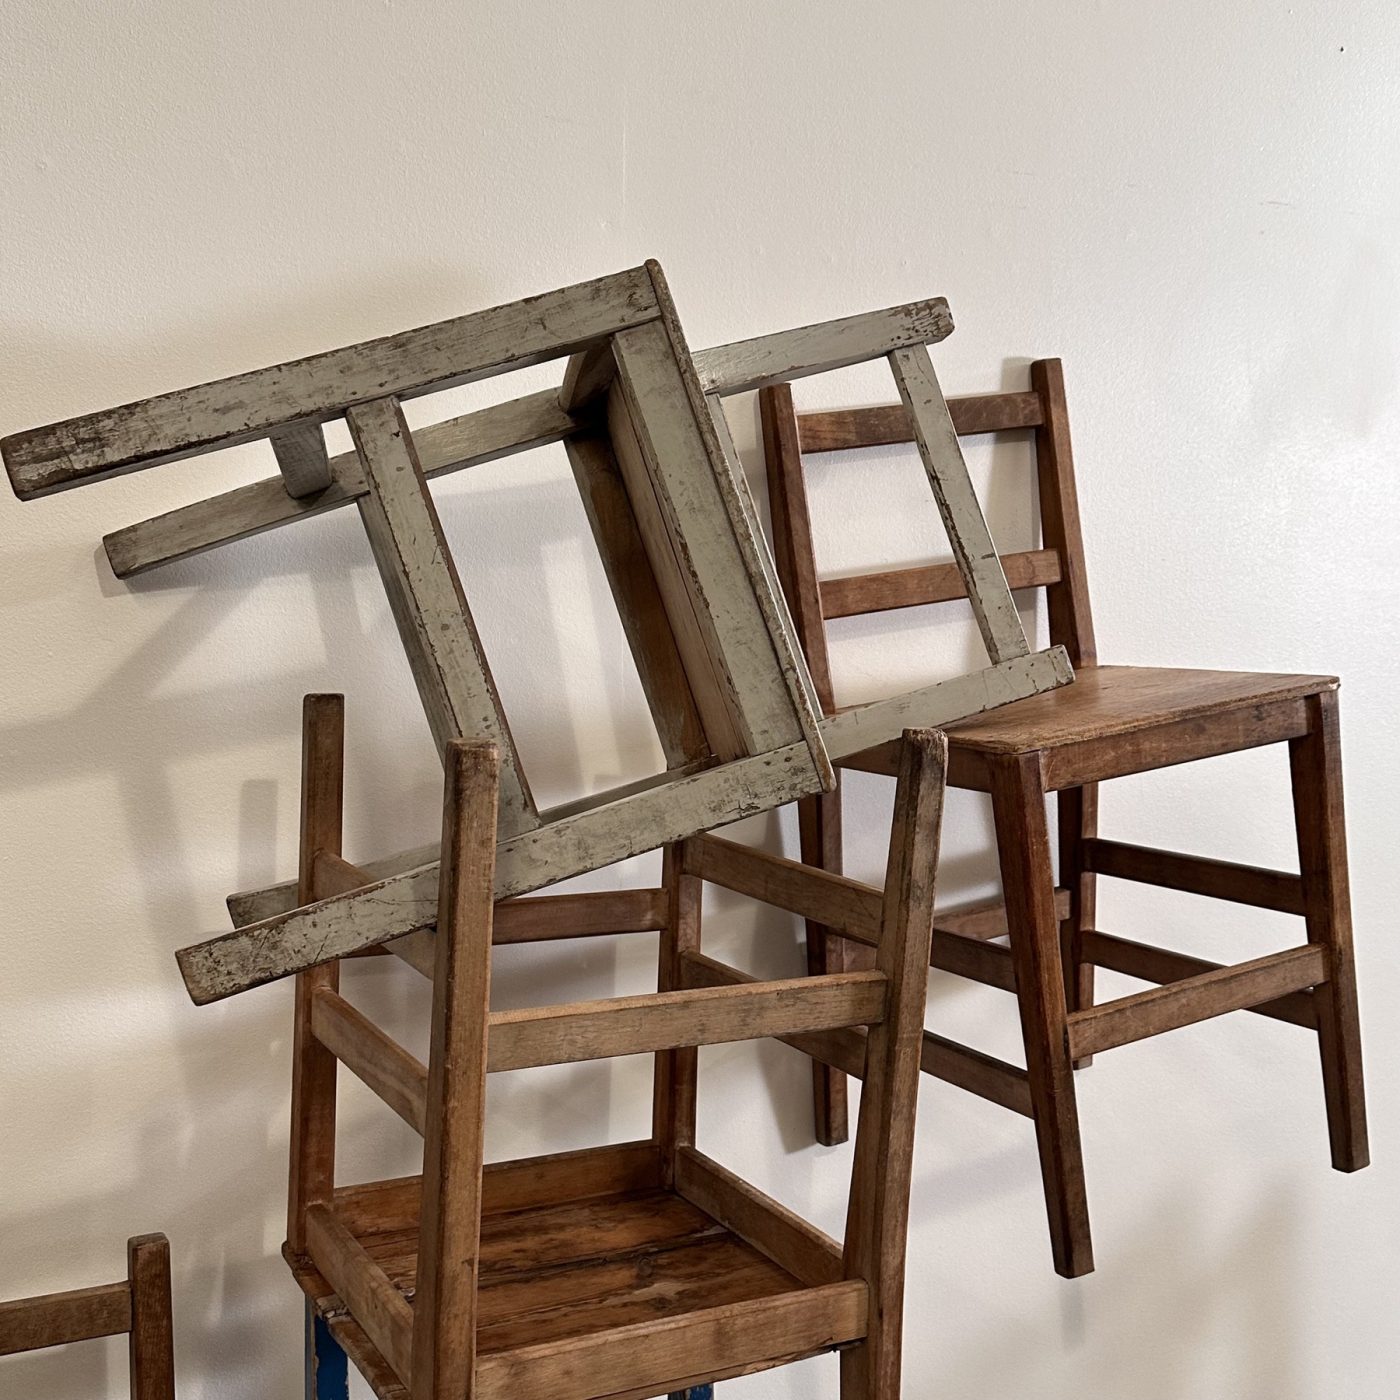 objet-vagabond-naive-chairs0007